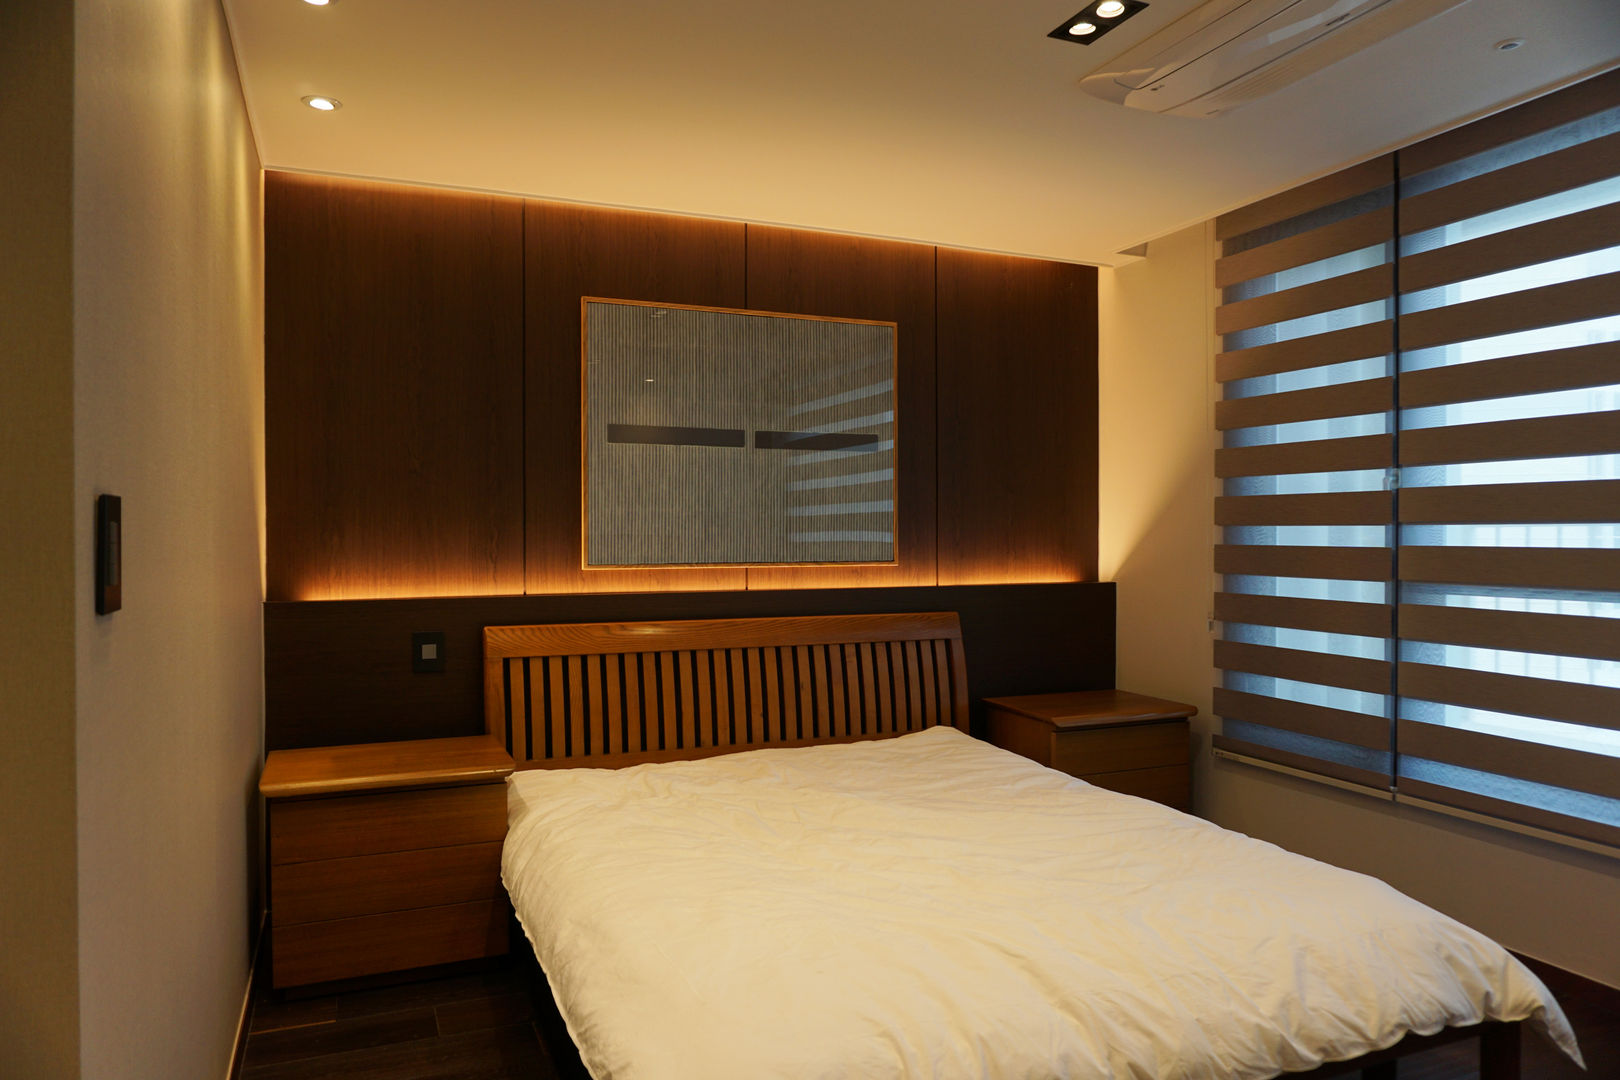 59PY 아파트 인테리어 APT INTERIOR_부산인테리어, 감자디자인 감자디자인 Asian style bedroom